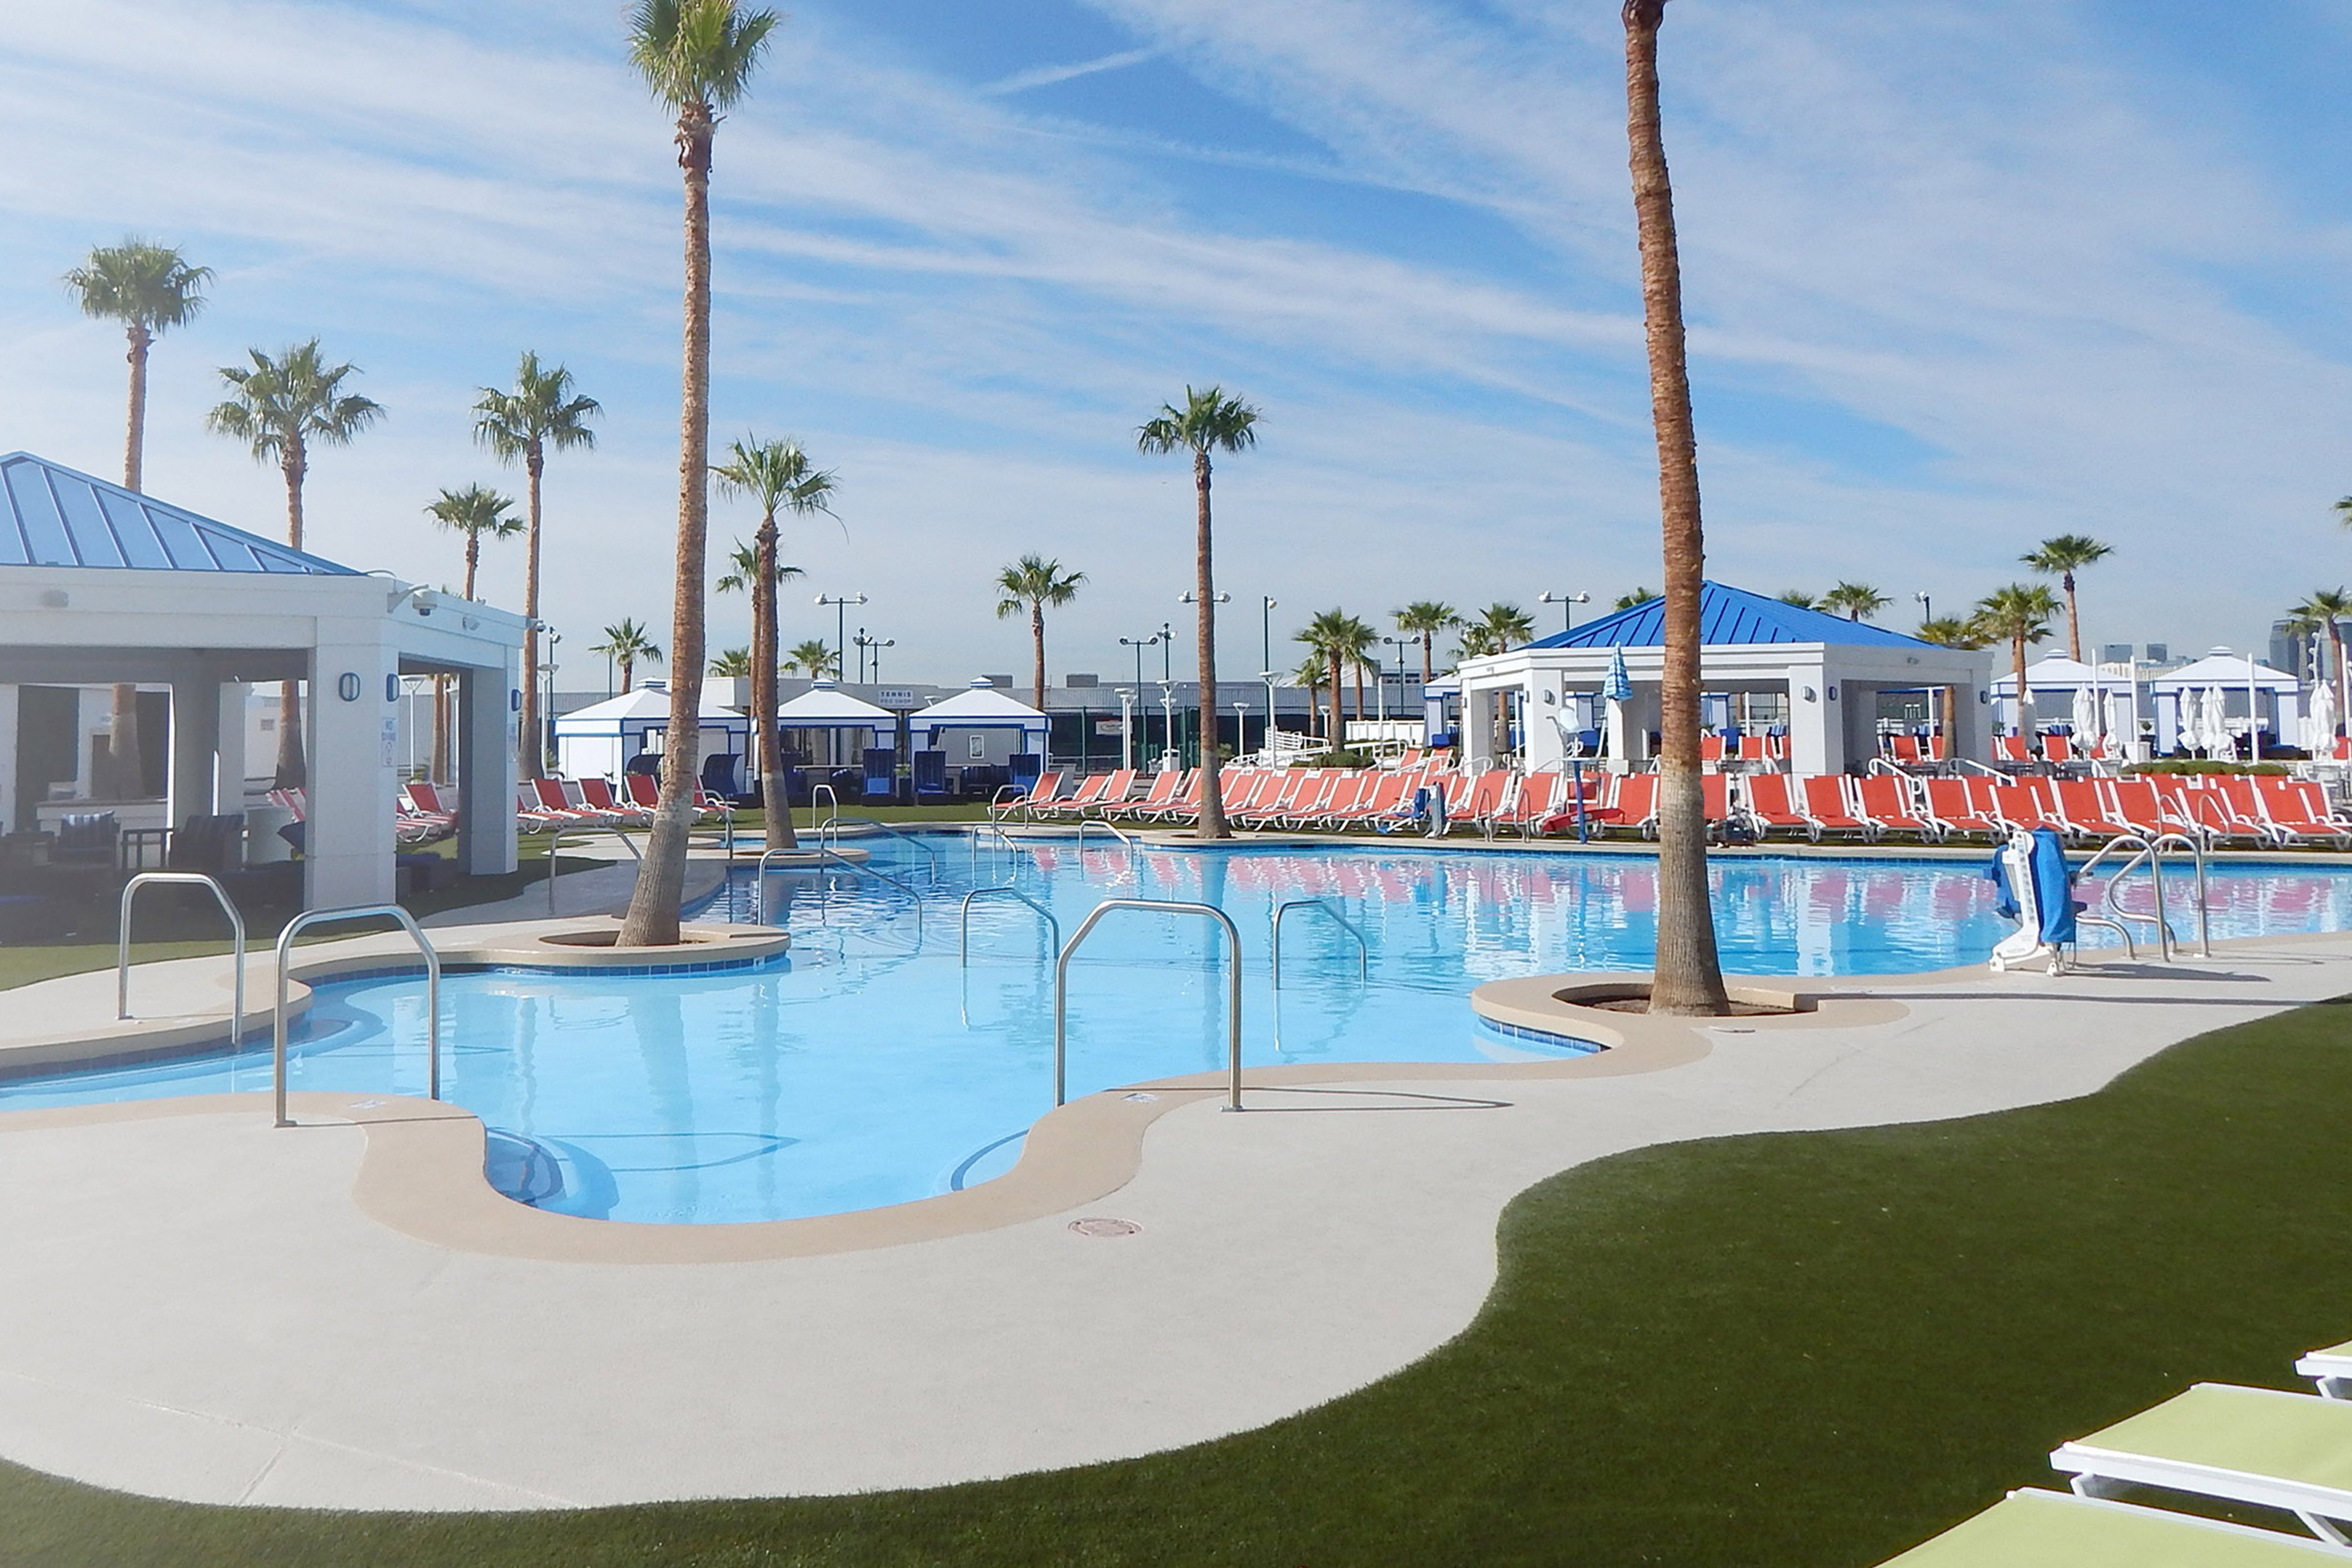 Pool at Westgate Las Vegas Resort